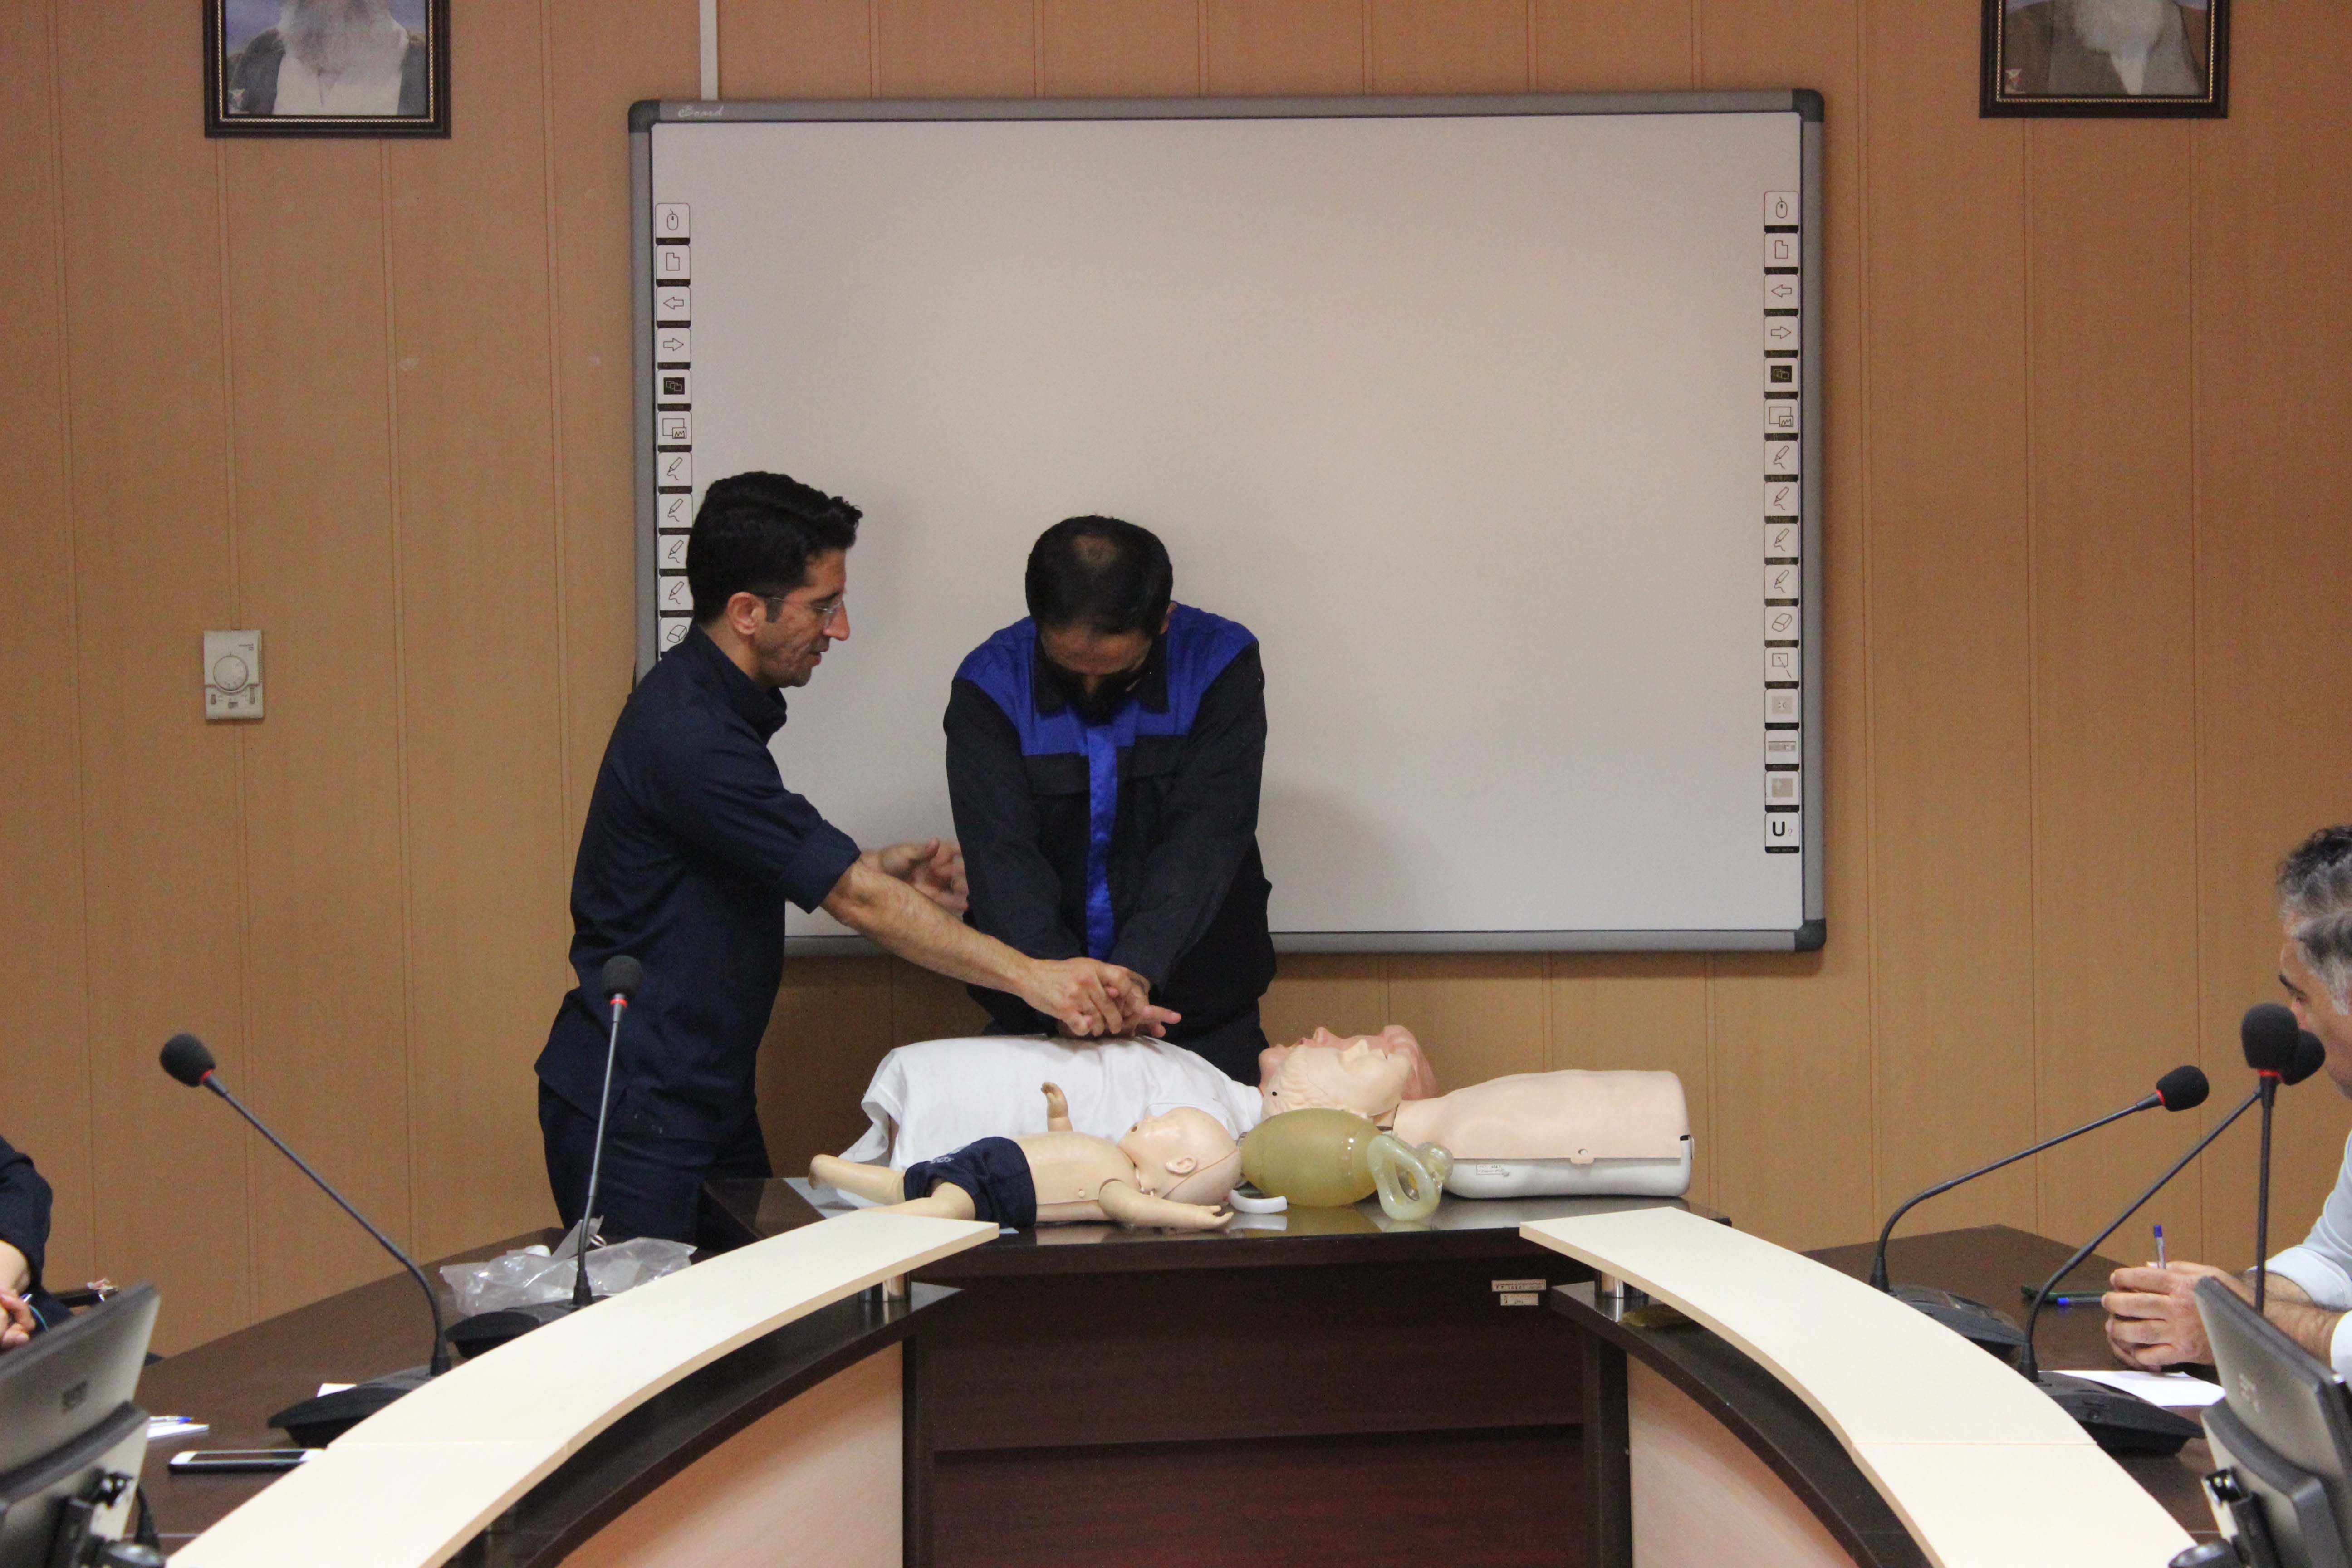 کلاس آموزش احیای قلبی پایه در بیمارستان میلاد شهریار